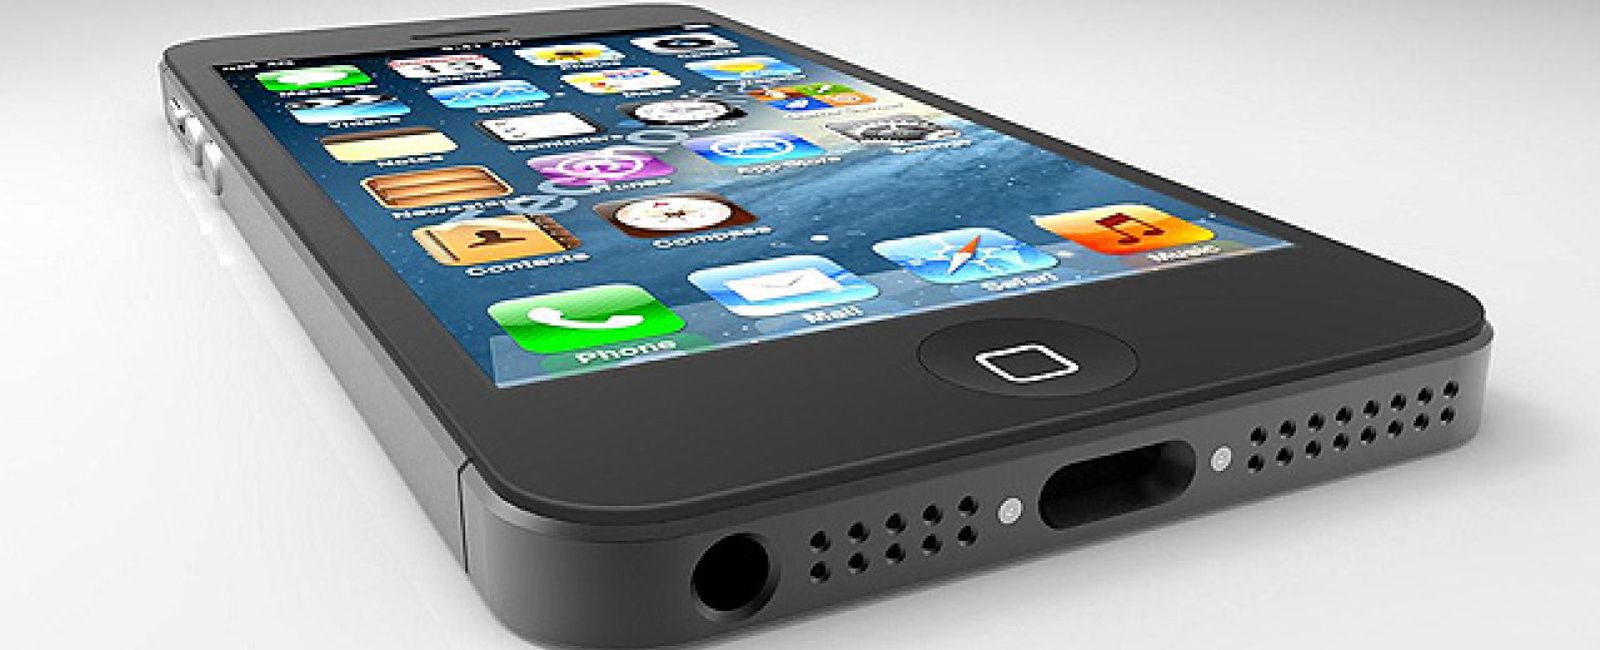 Foto: Donde dije "digo"... Apple prepara un 'mega iPhone' de 4,8 pulgadas